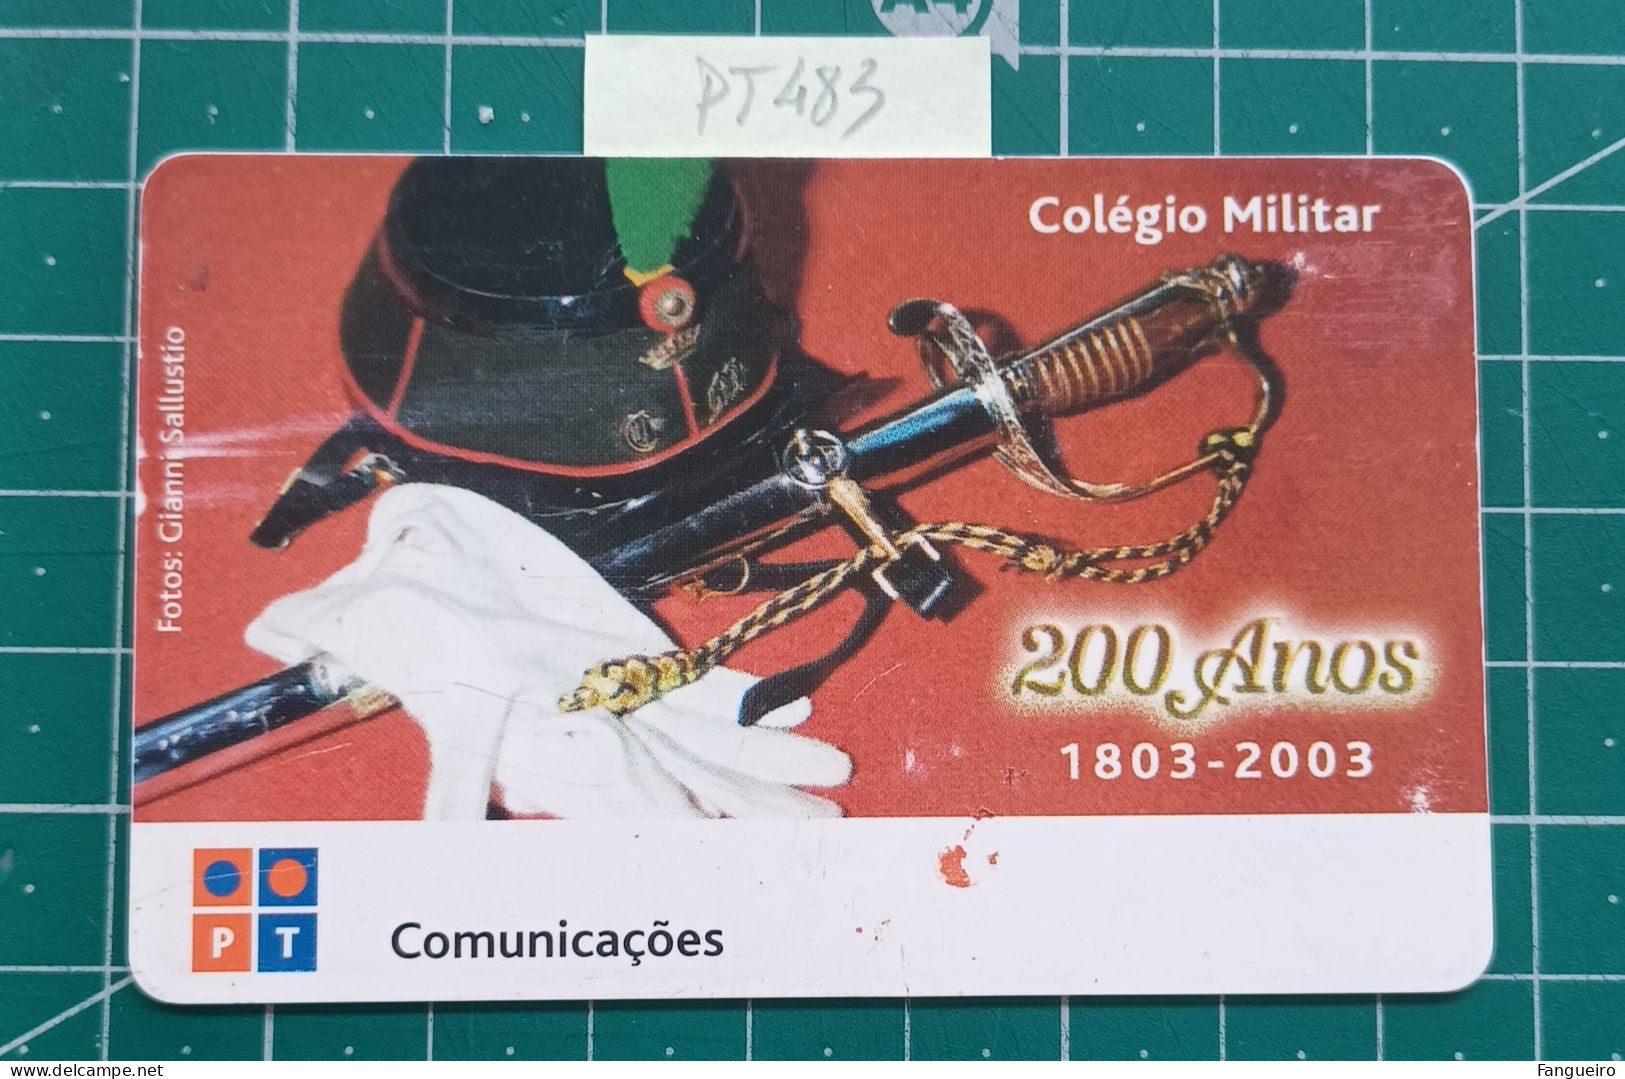 PORTUGAL USED PHONECARD PT483 COLEGIO MILITAR - Portogallo